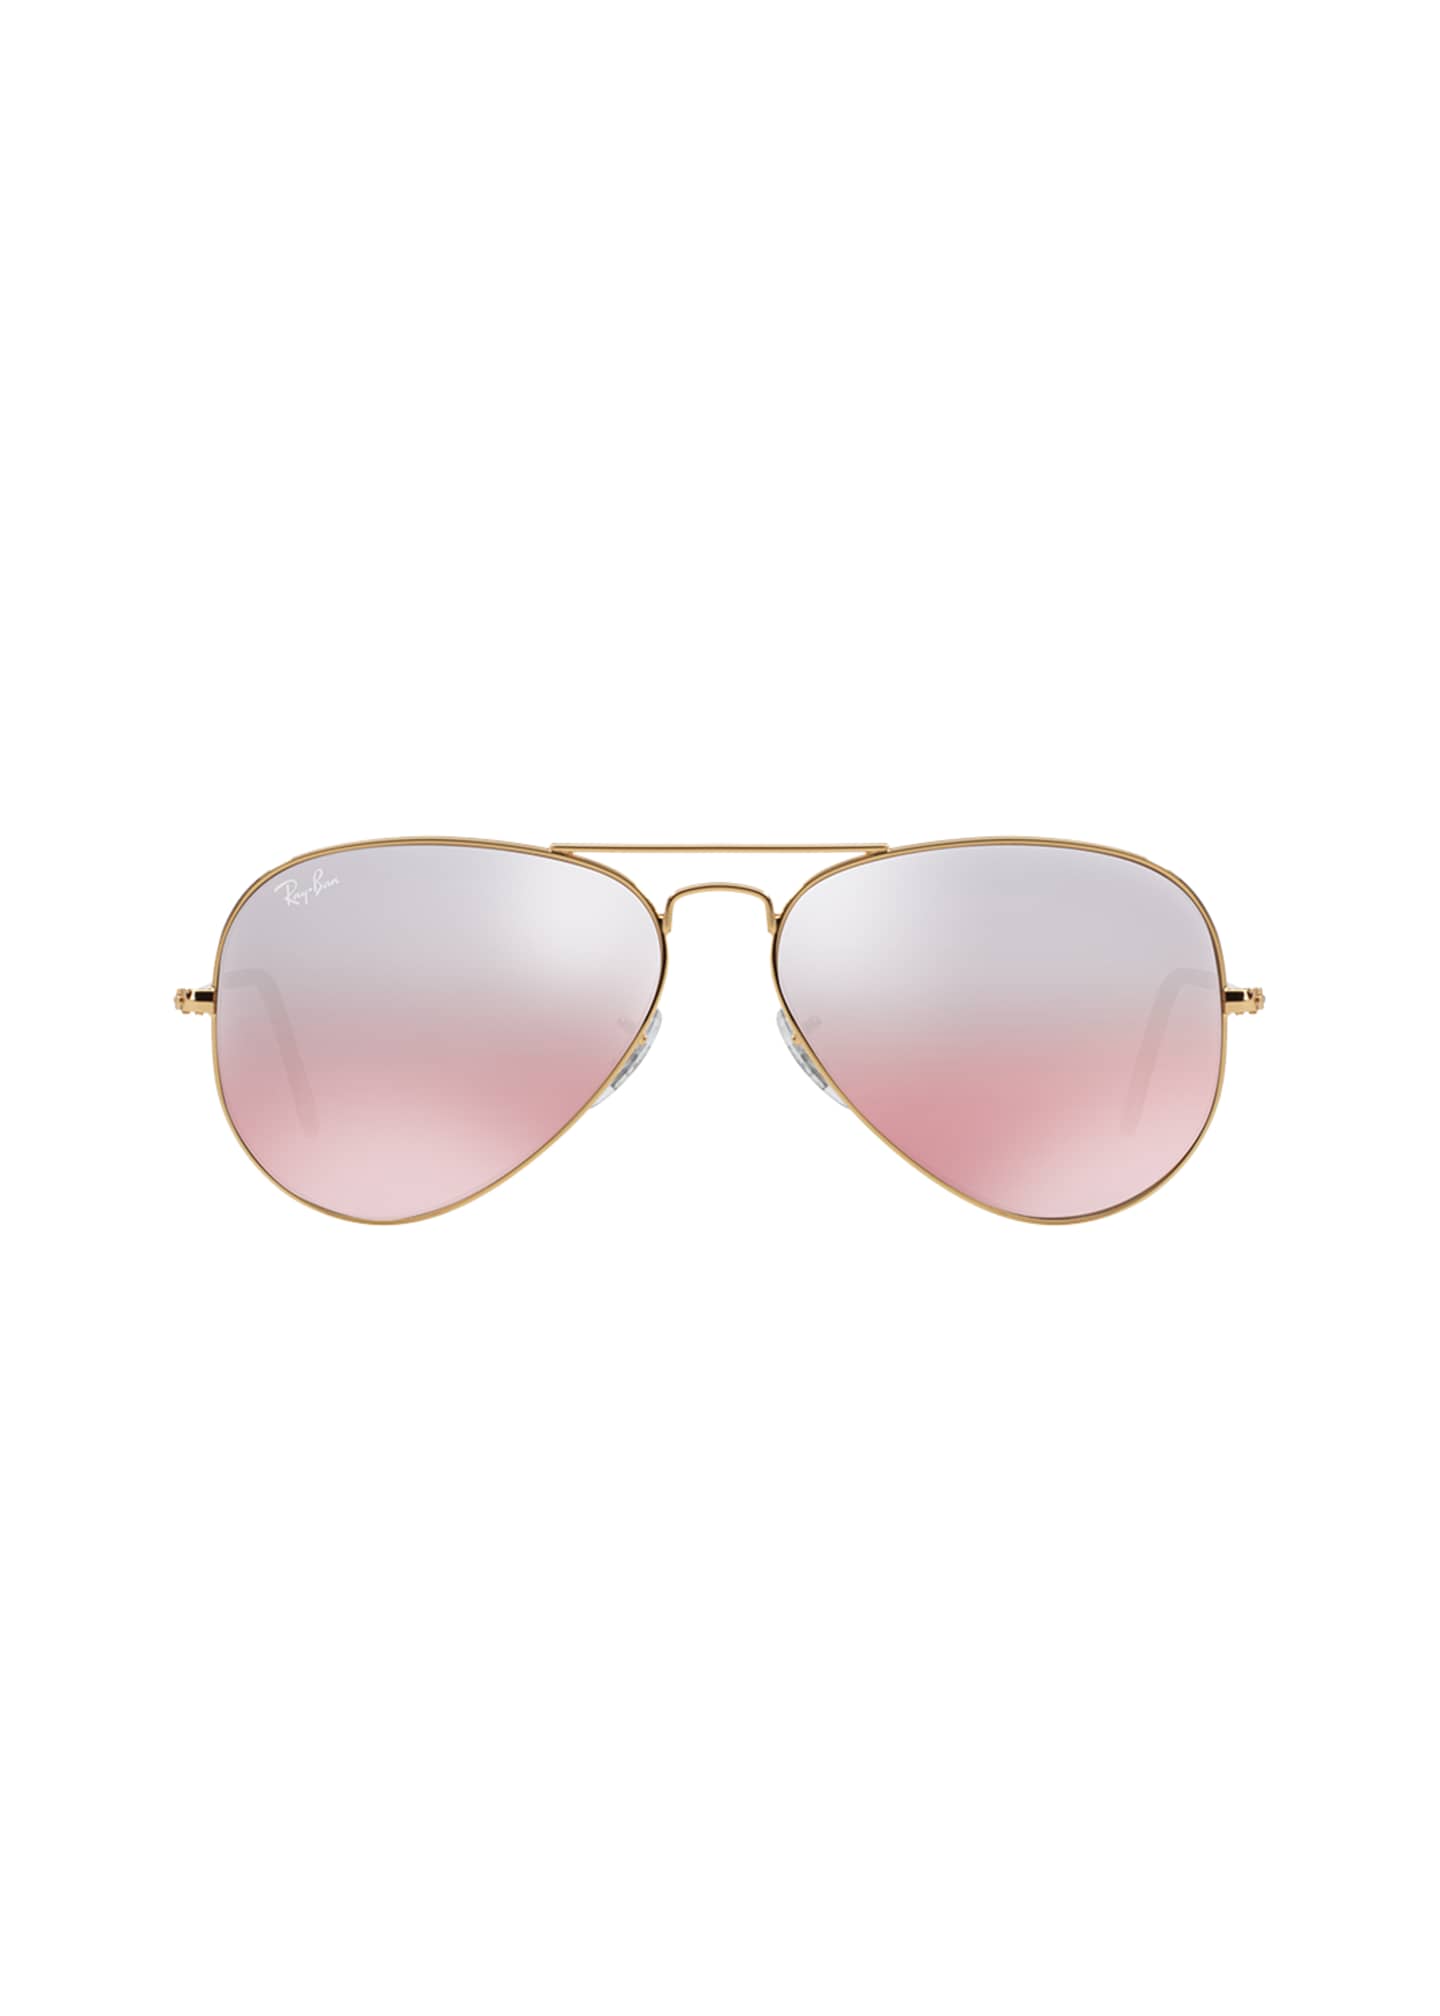 Ray Ban Mirrored Aviator Sunglasses Bergdorf Goodman